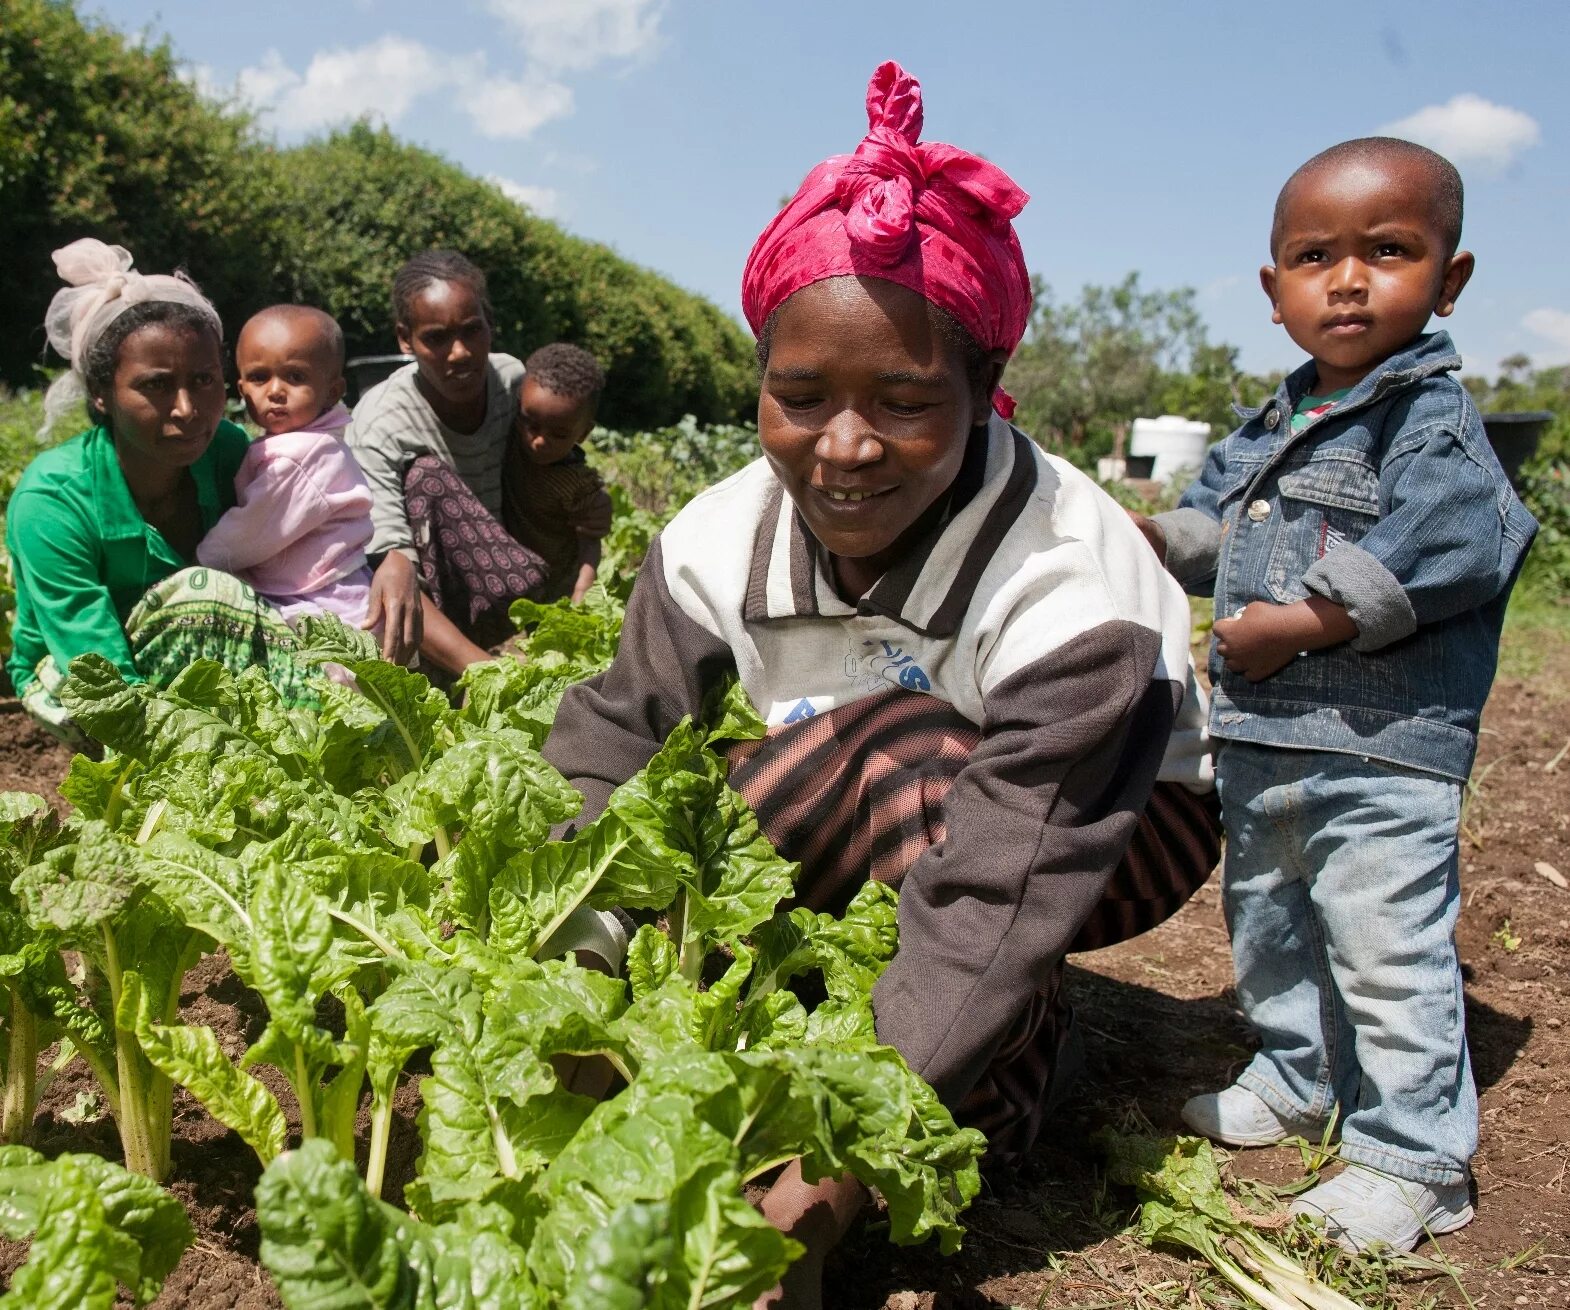 Эфиопия какая экономика. Эфиопия сельское хозяйство. Промышленность и сельское хозяйство Эфиопии. Земледелие в Эфиопии. Африка Эфиопия сельское хозяйство.